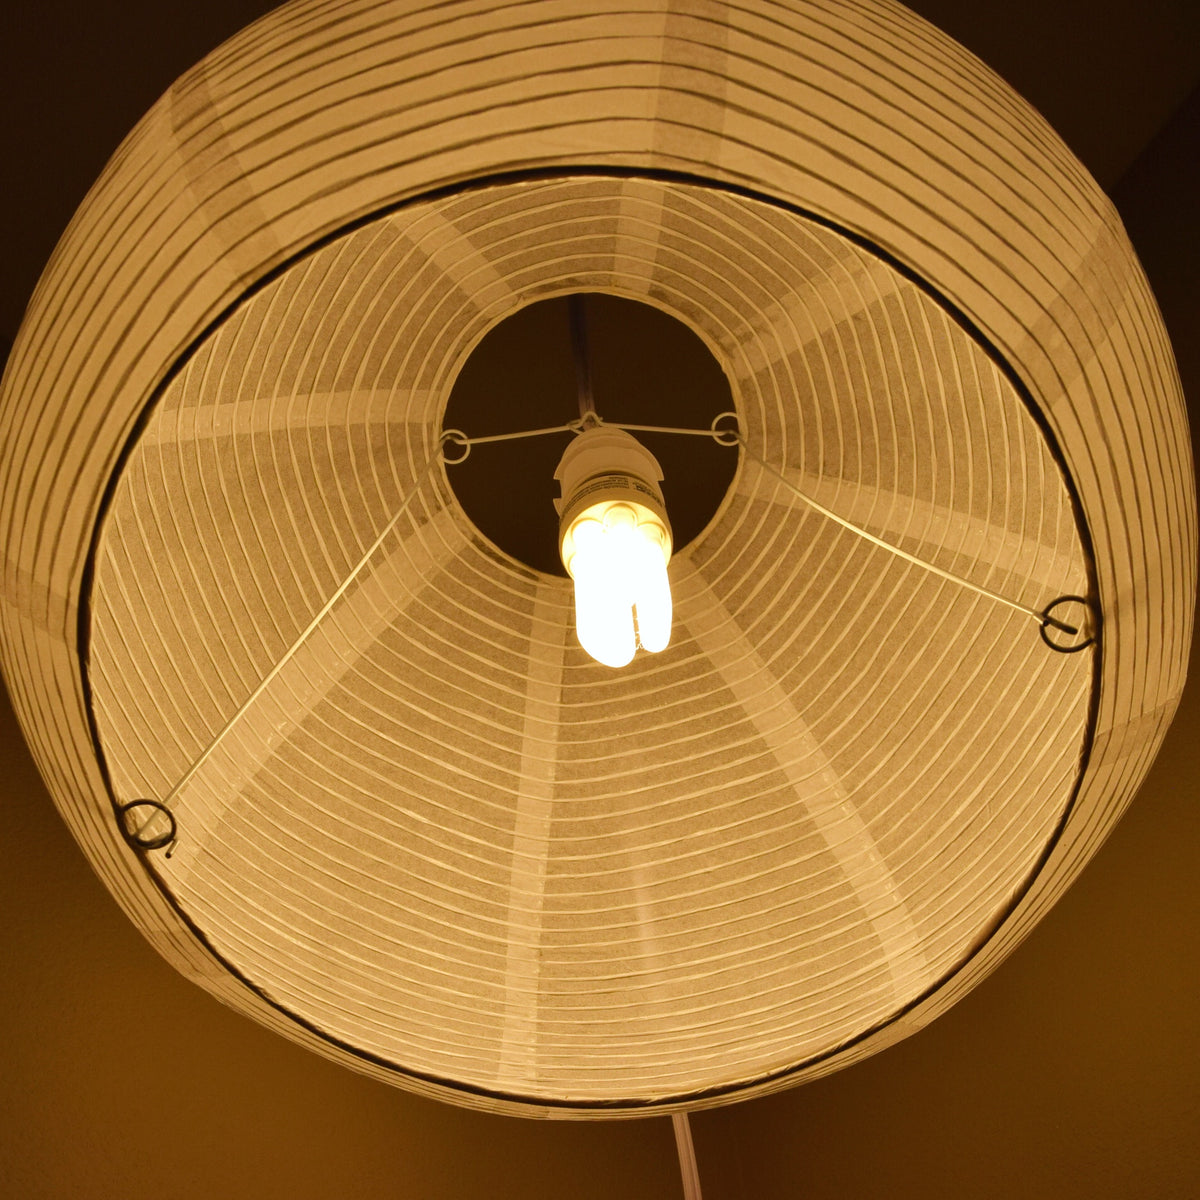 Spherical Dome Shaped Premium Fine Line Paper Lantern Lampshade, White (16&quot;W x 12&quot;H) - Luna Bazaar | Boho &amp; Vintage Style Decor